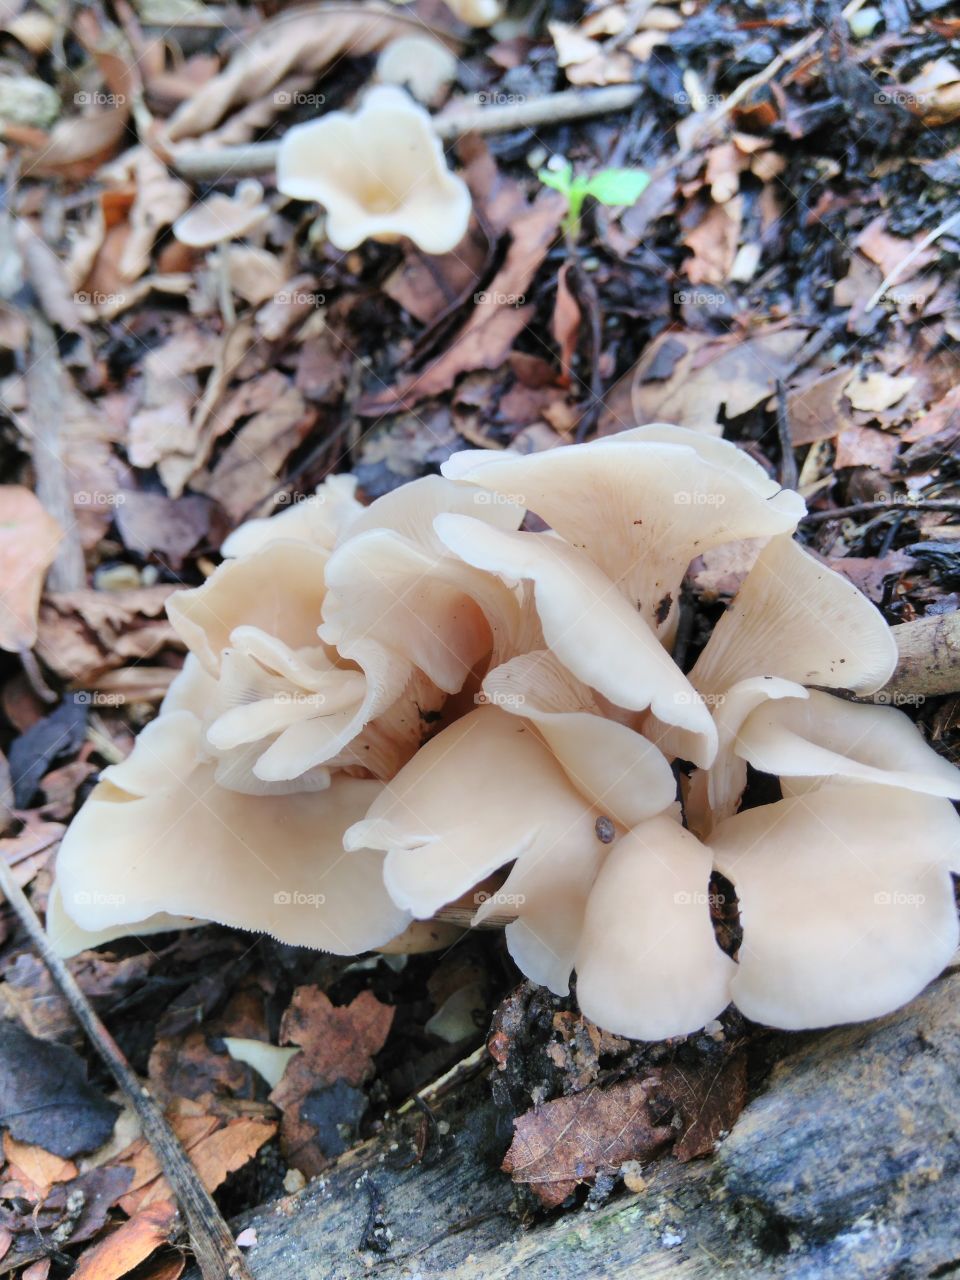 Wild mushroom #1